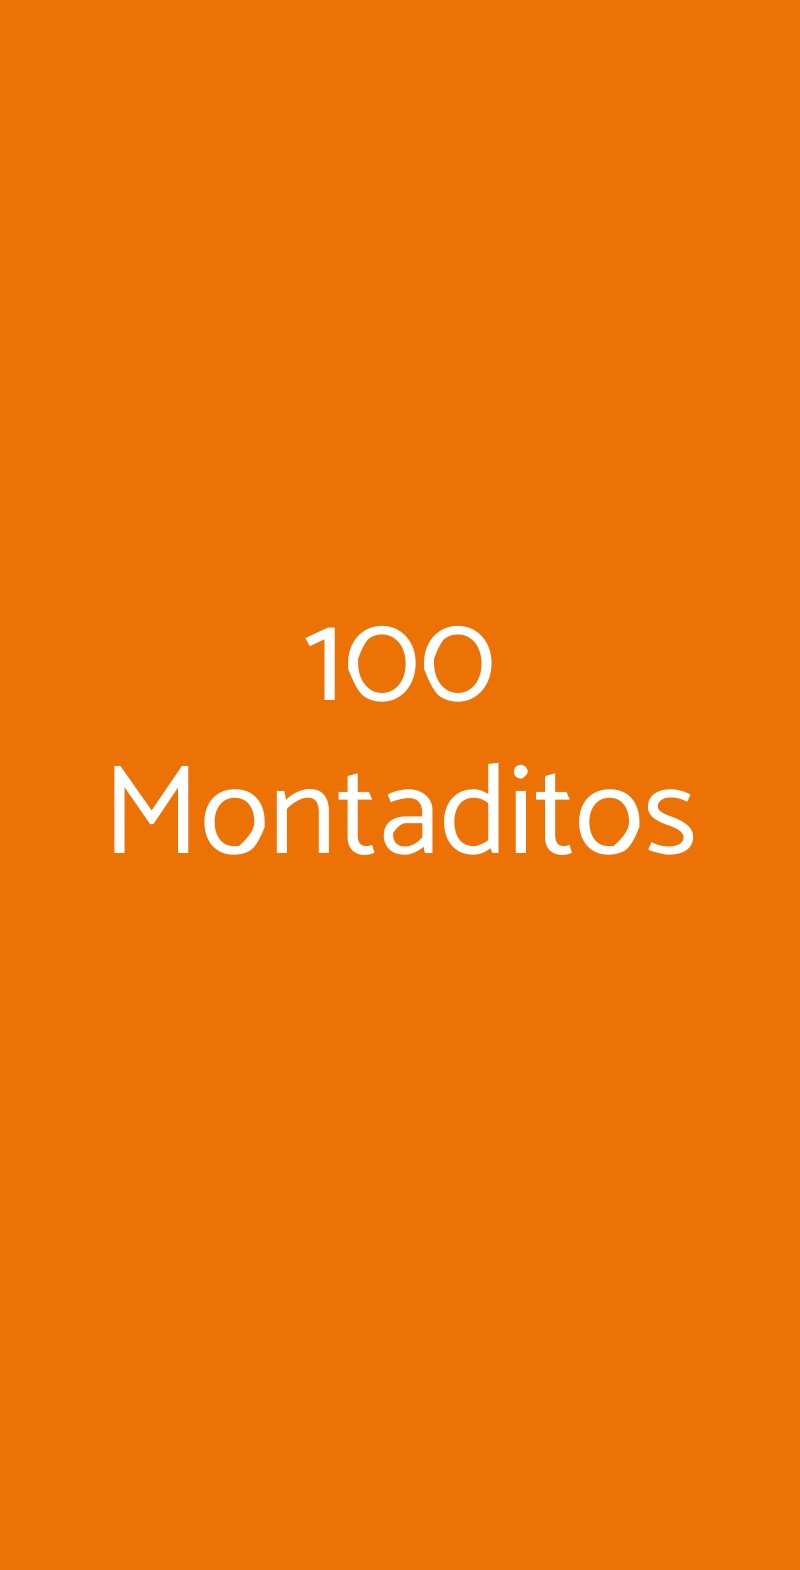 100 Montaditos Firenze menù 1 pagina